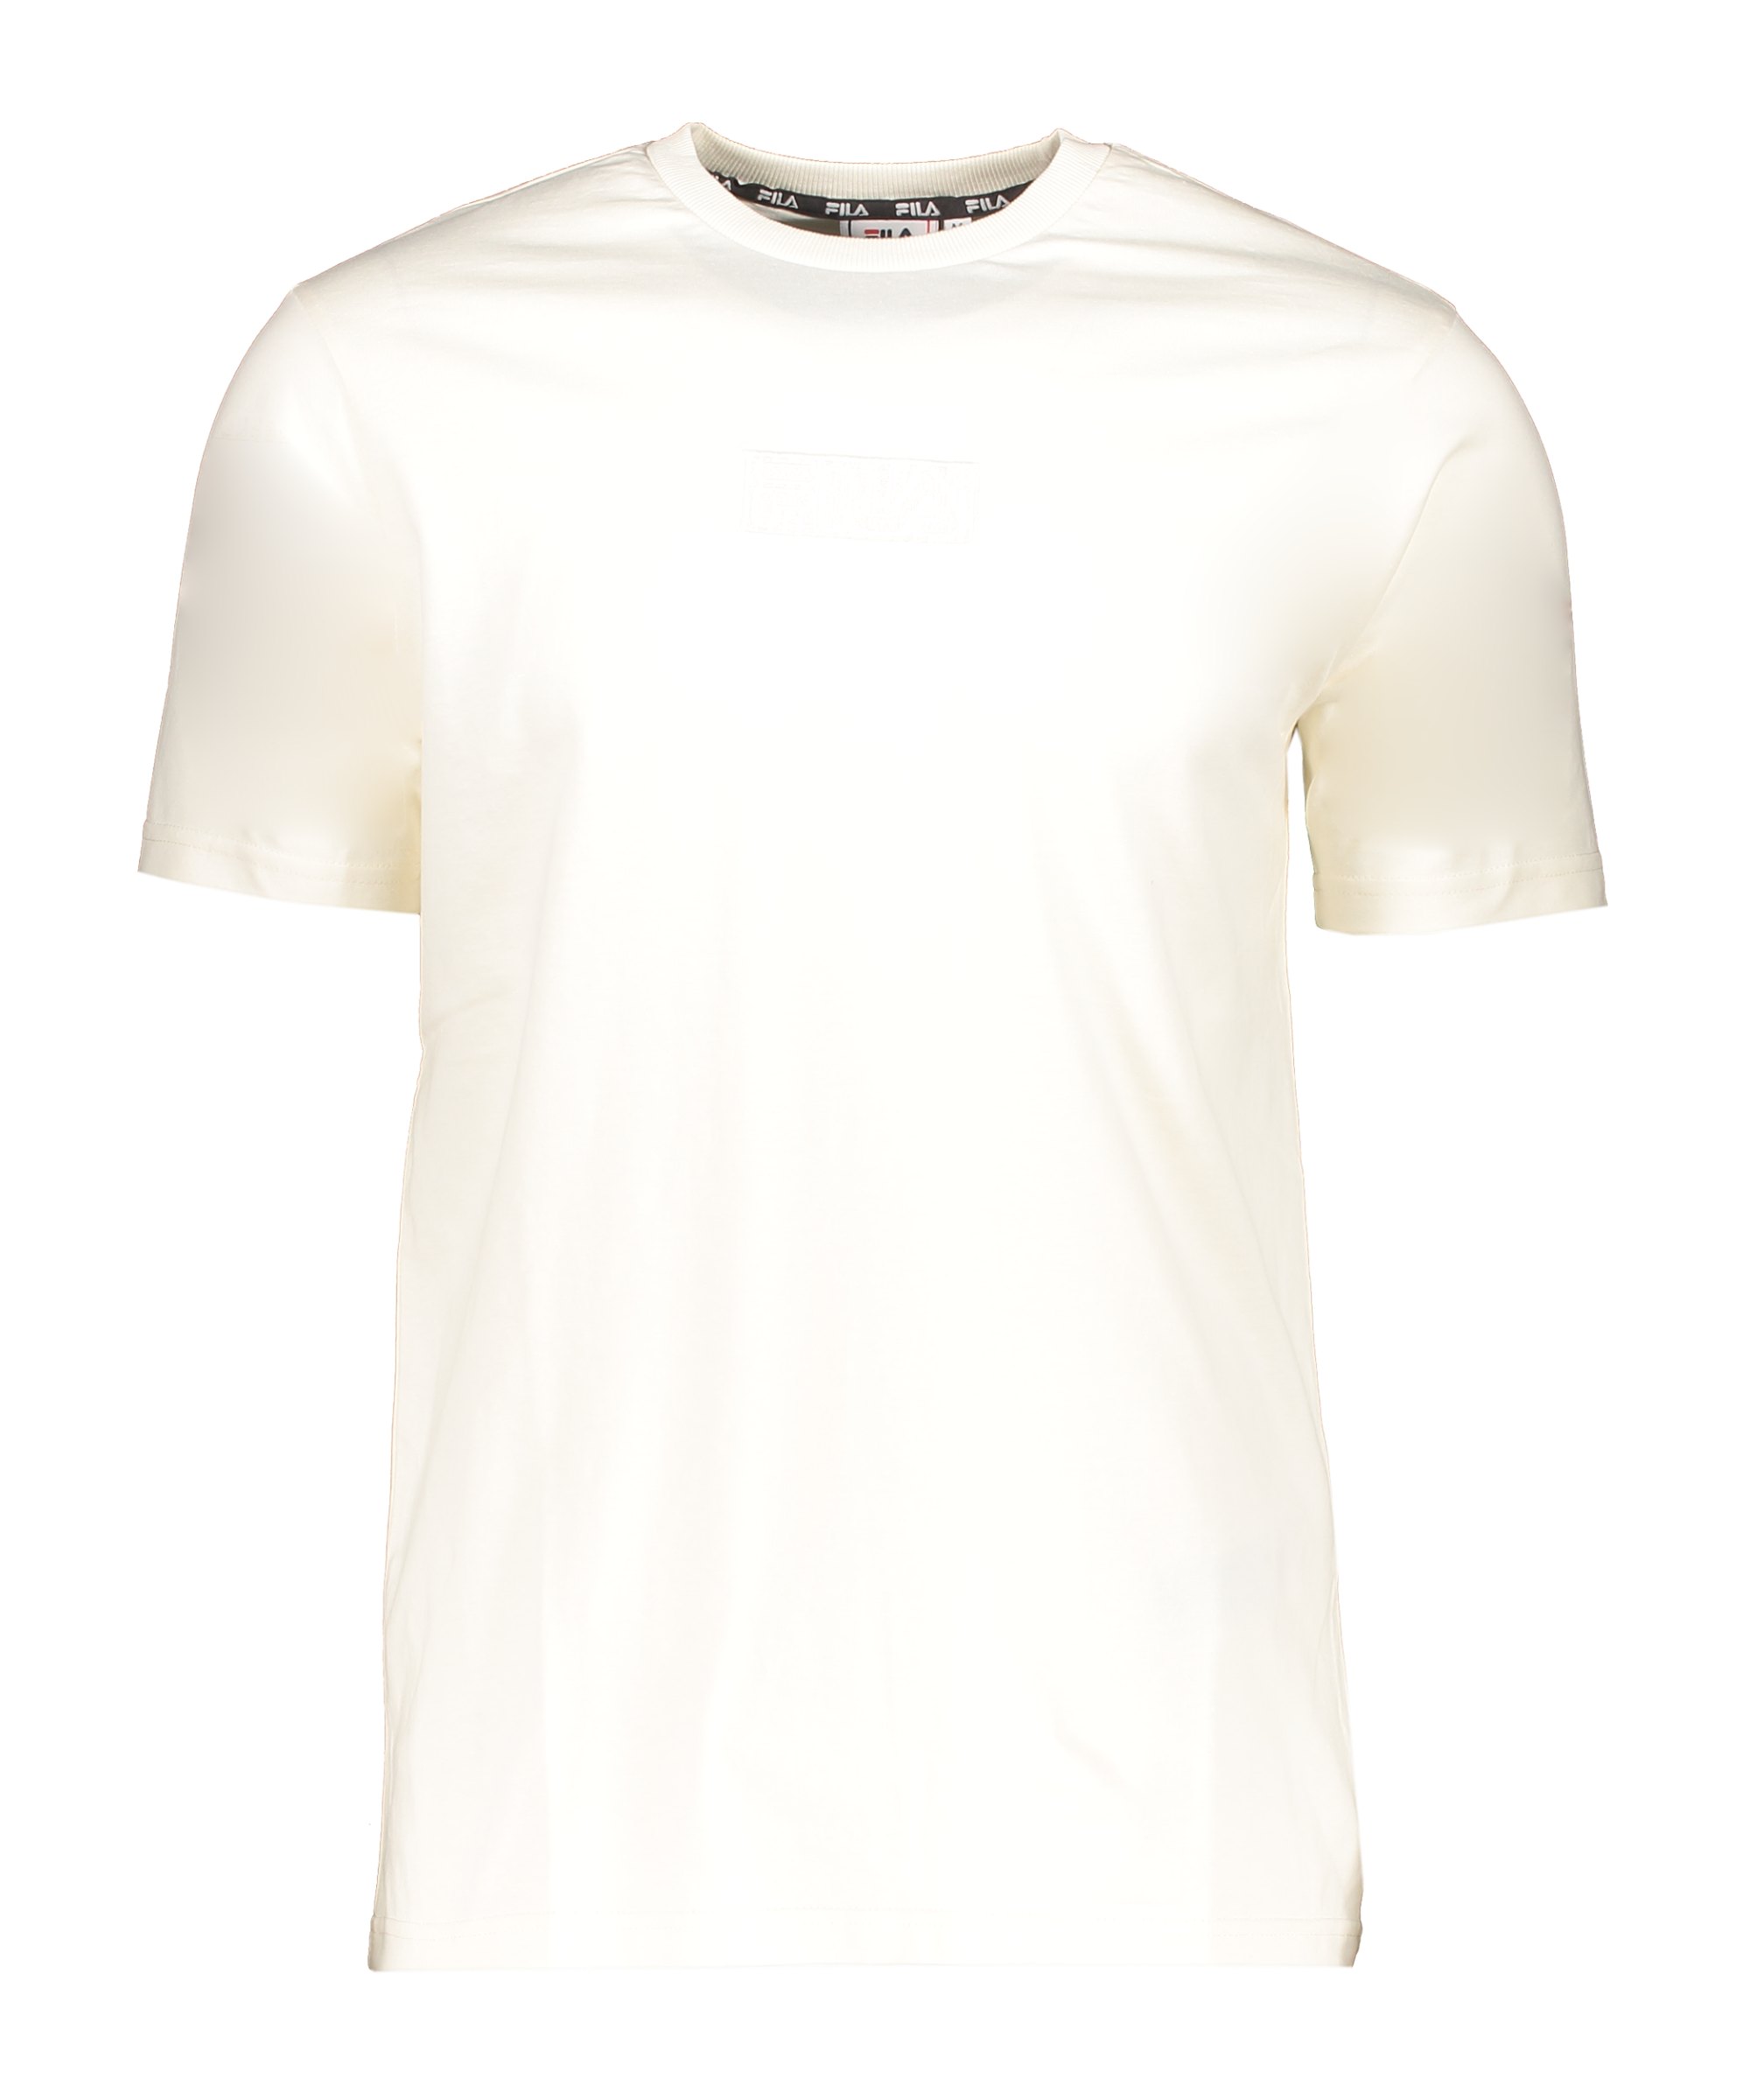 FILA Blesh T-Shirt Weiss F10010 - weiss